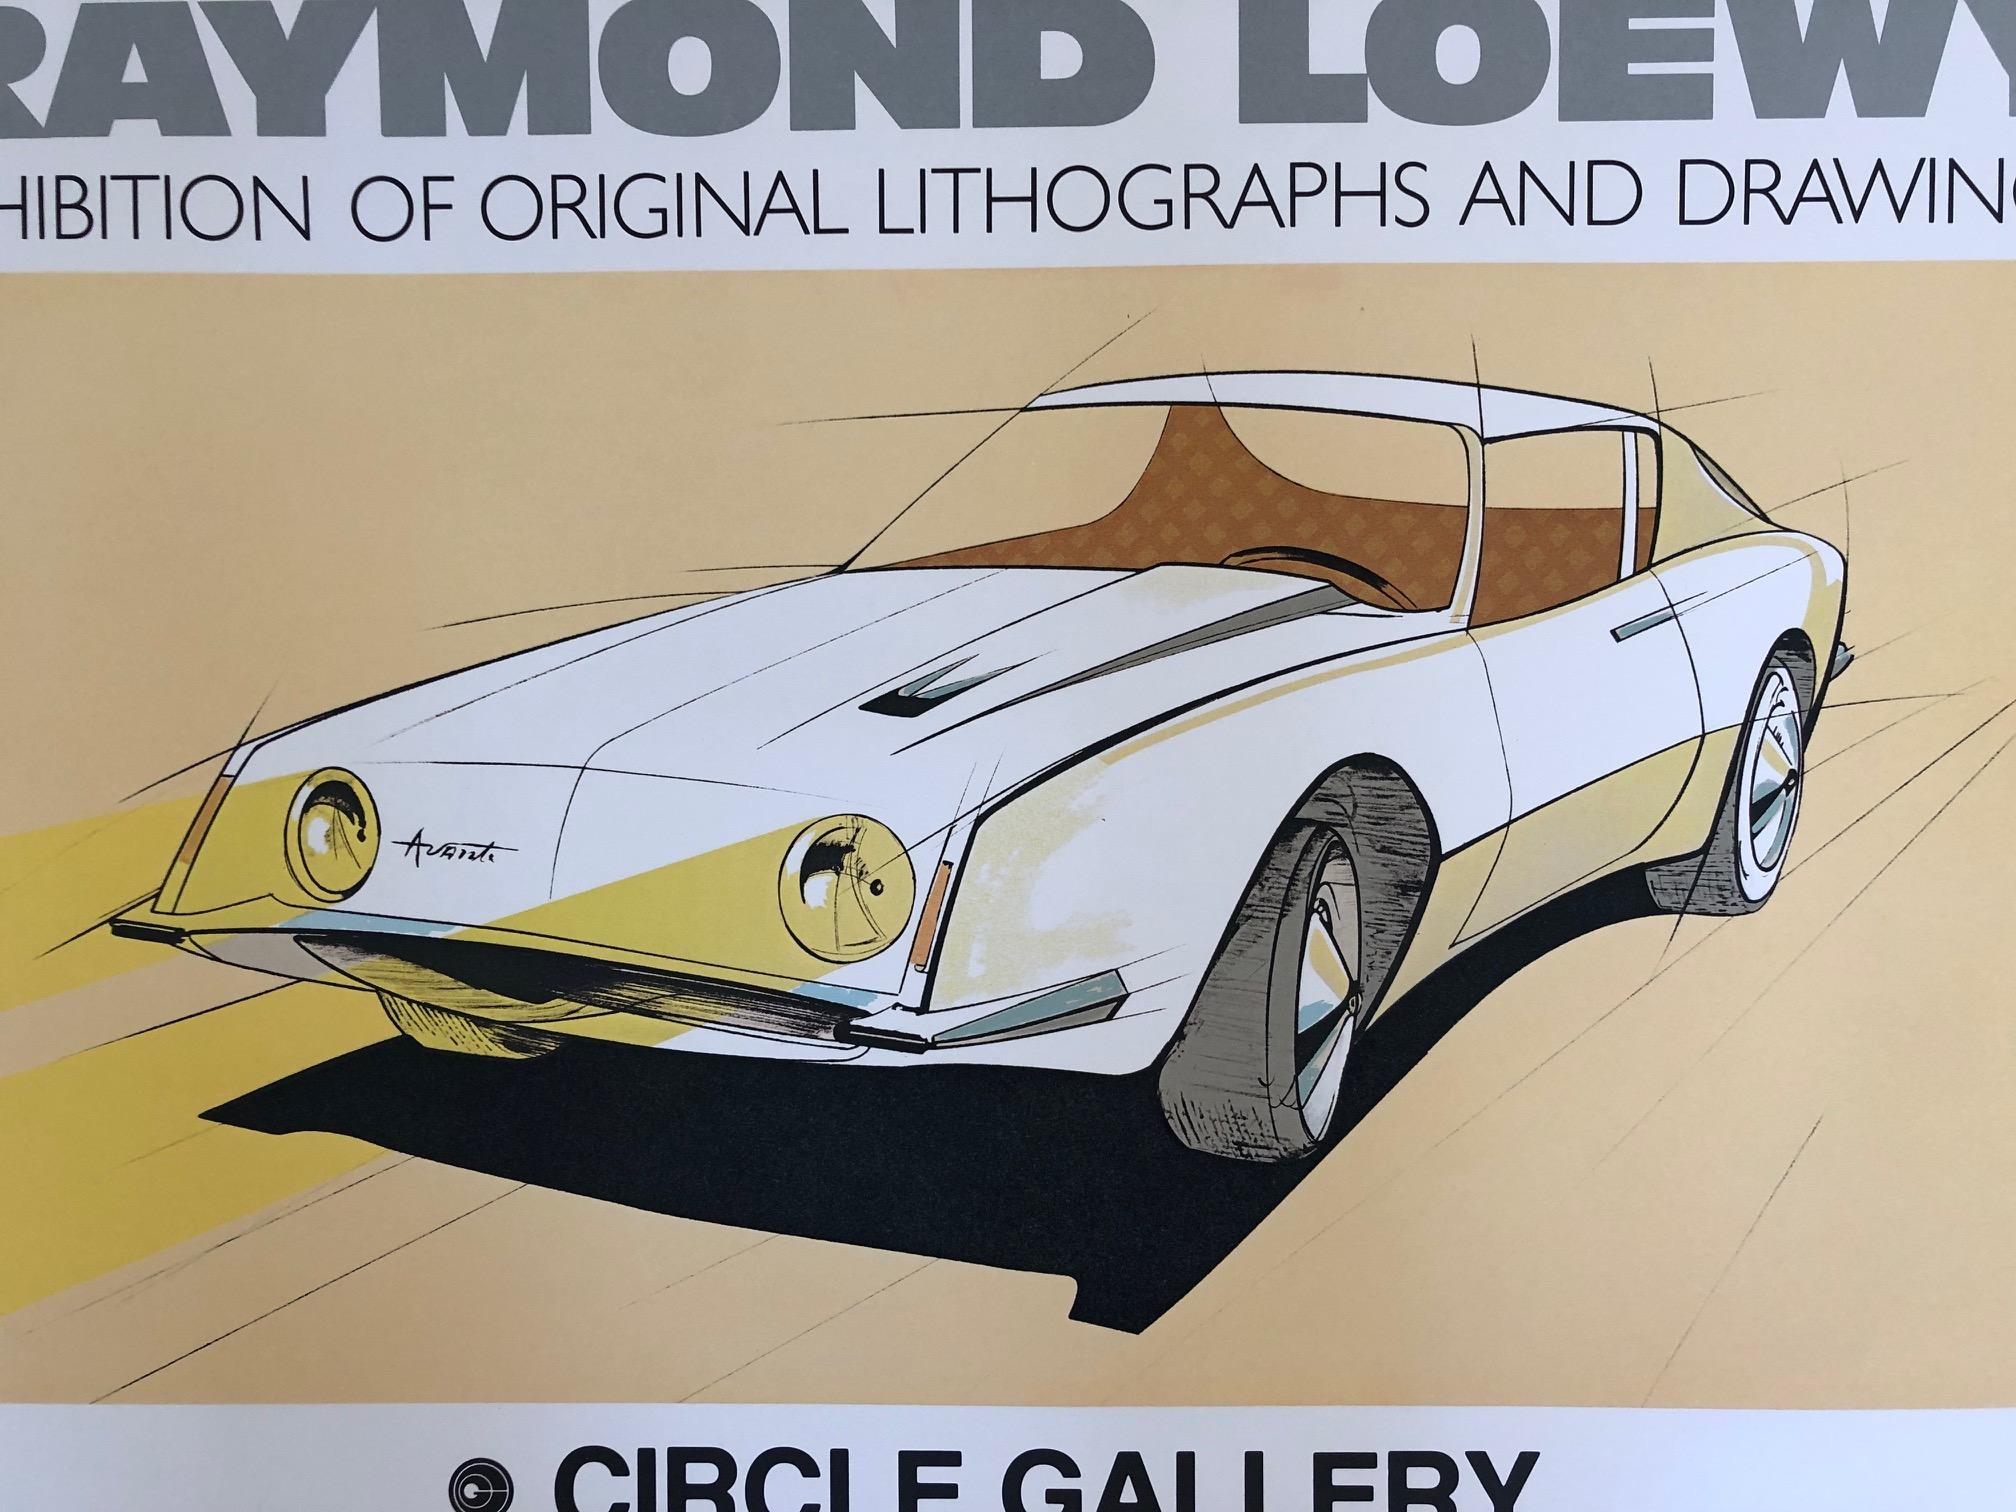 Une intéressante affiche de Raymond Loewy provenant de Circle Gallery, vers 1979. Exposition de dessins, croquis, etc. du célèbre designer industriel.